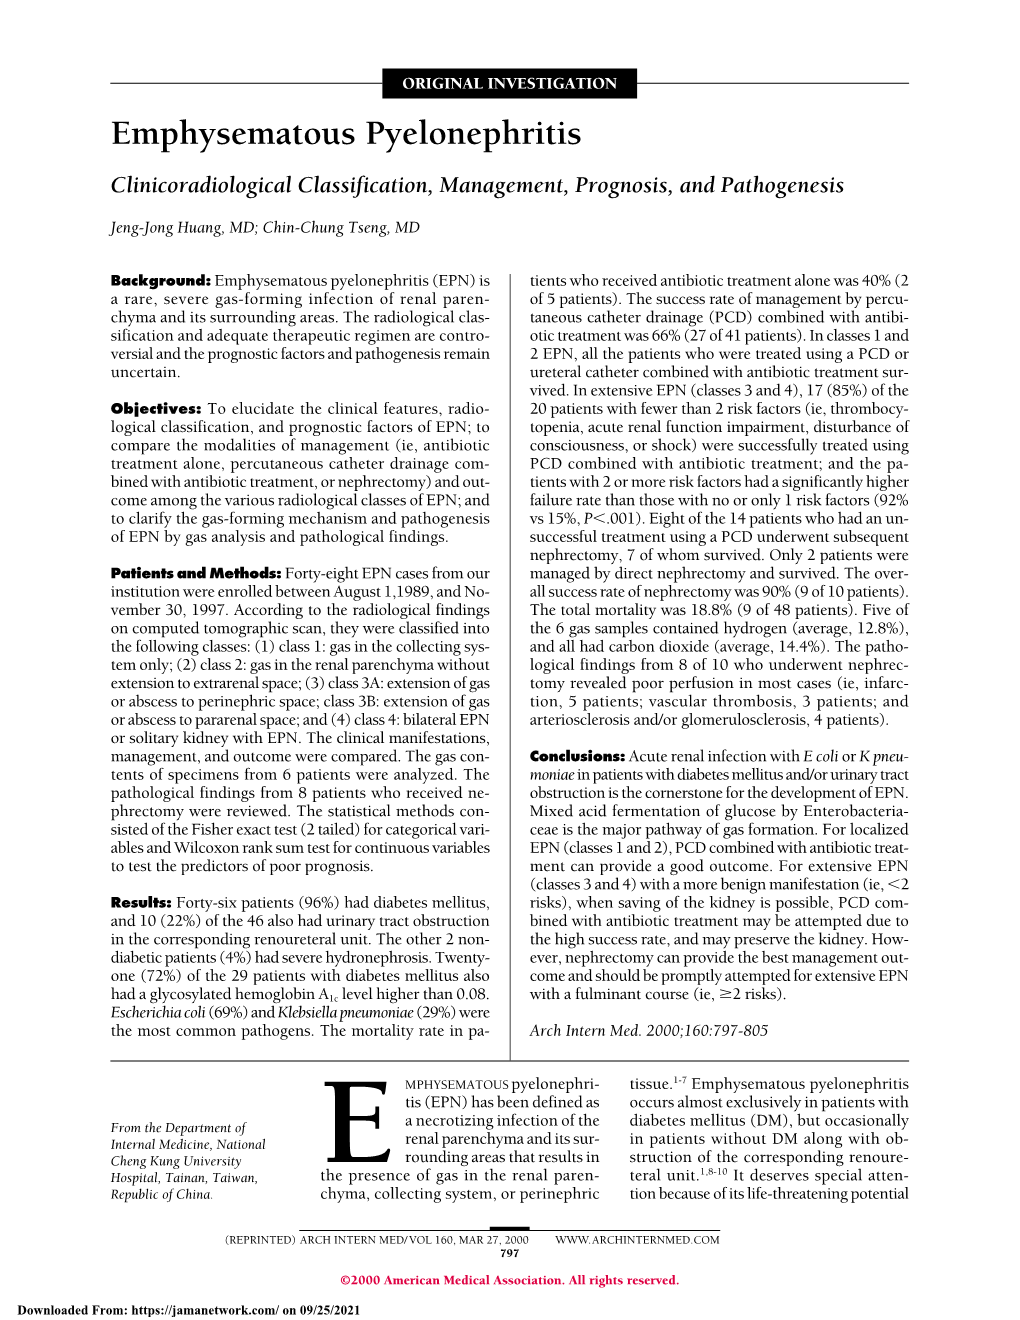 Emphysematous Pyelonephritis Clinicoradiological Classification, Management, Prognosis, and Pathogenesis